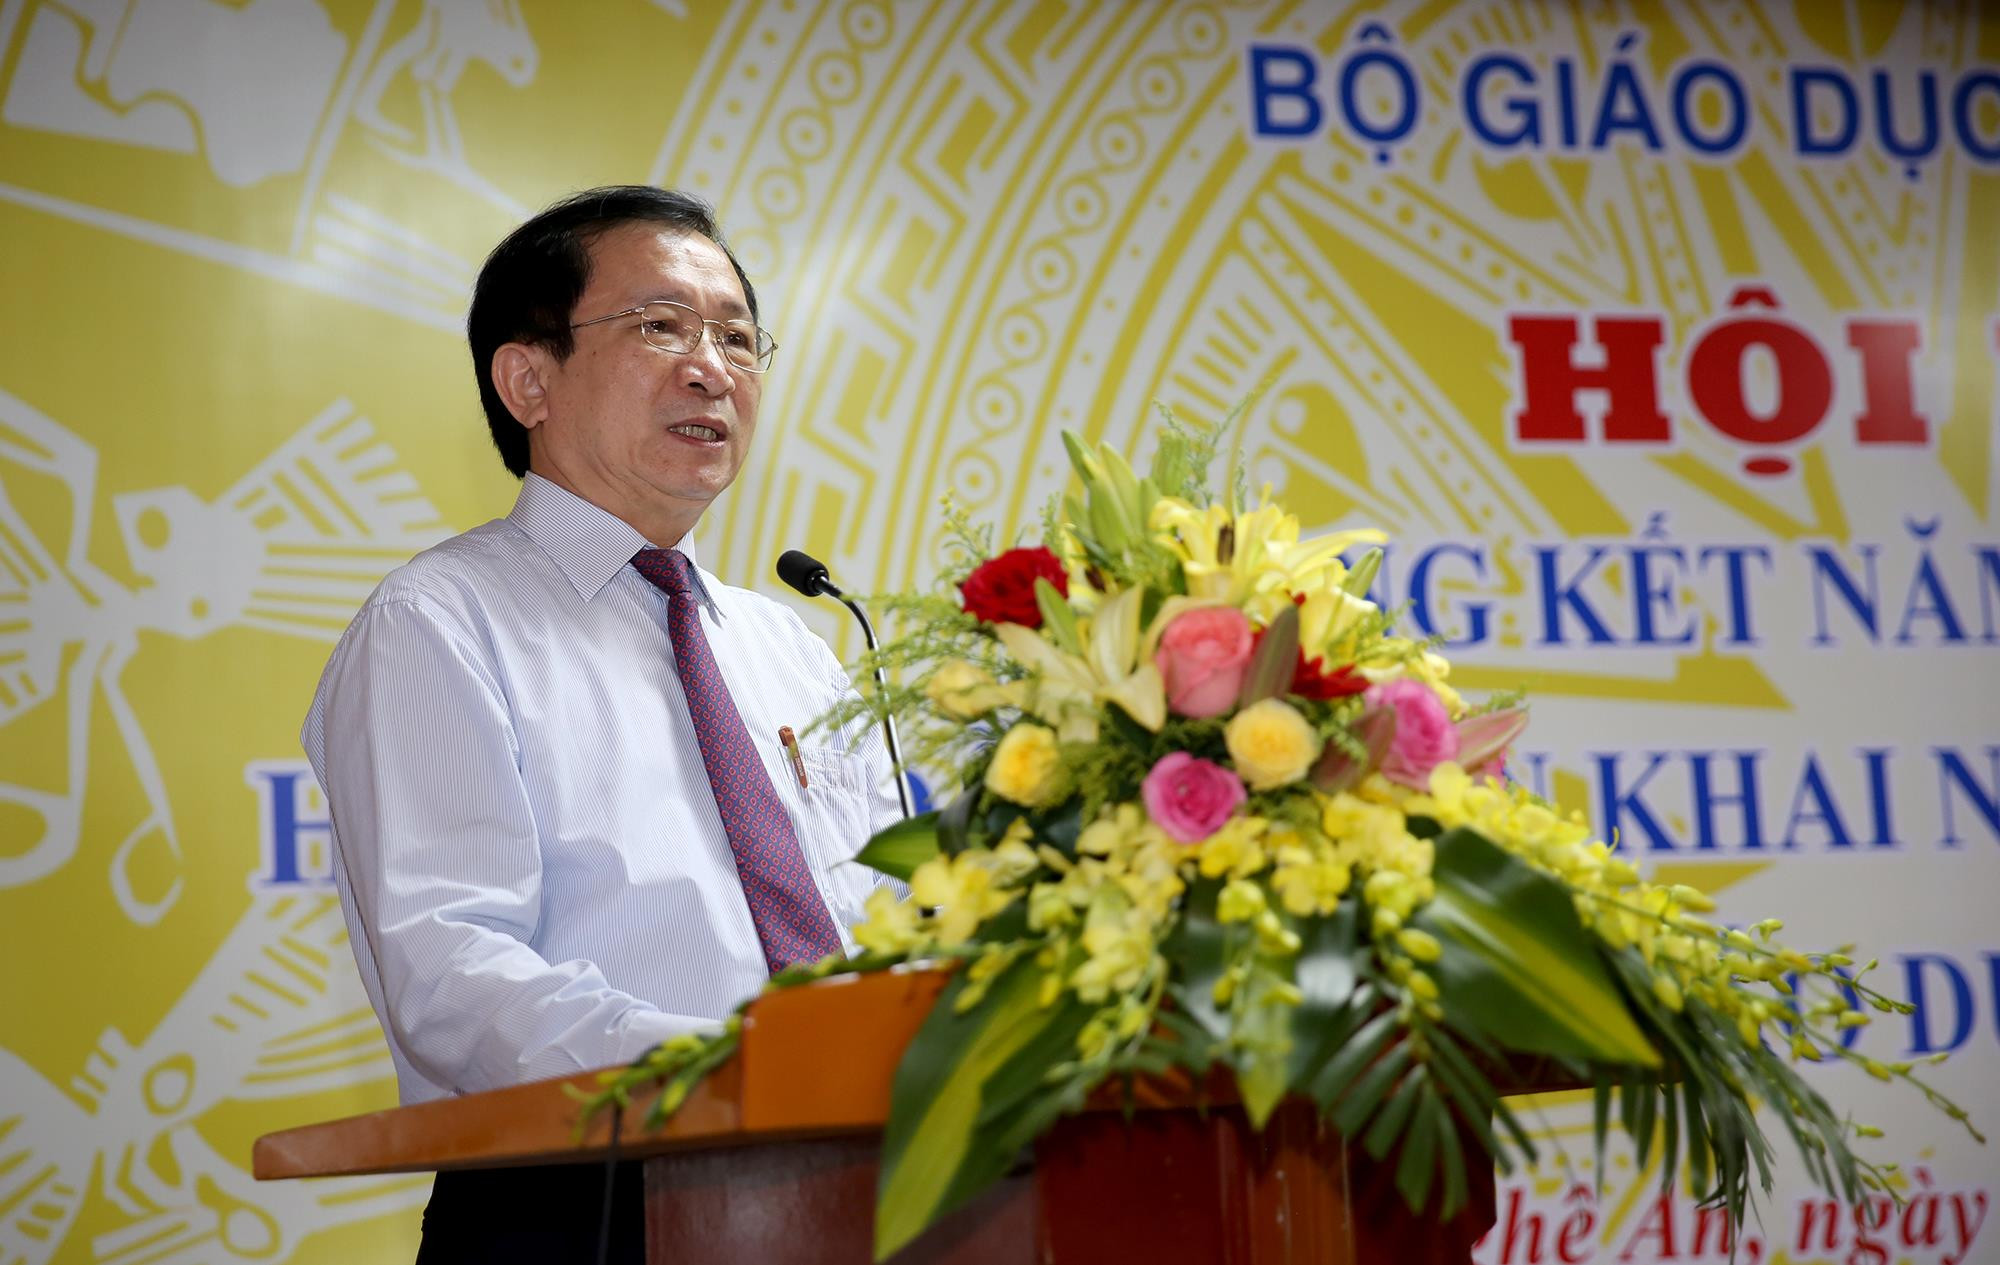 Phó Chủ tịch UBND tỉnh Đinh Viết Hồng phát biểu chào mừng hội nghị tổng kết. Ảnh: Đức Anh